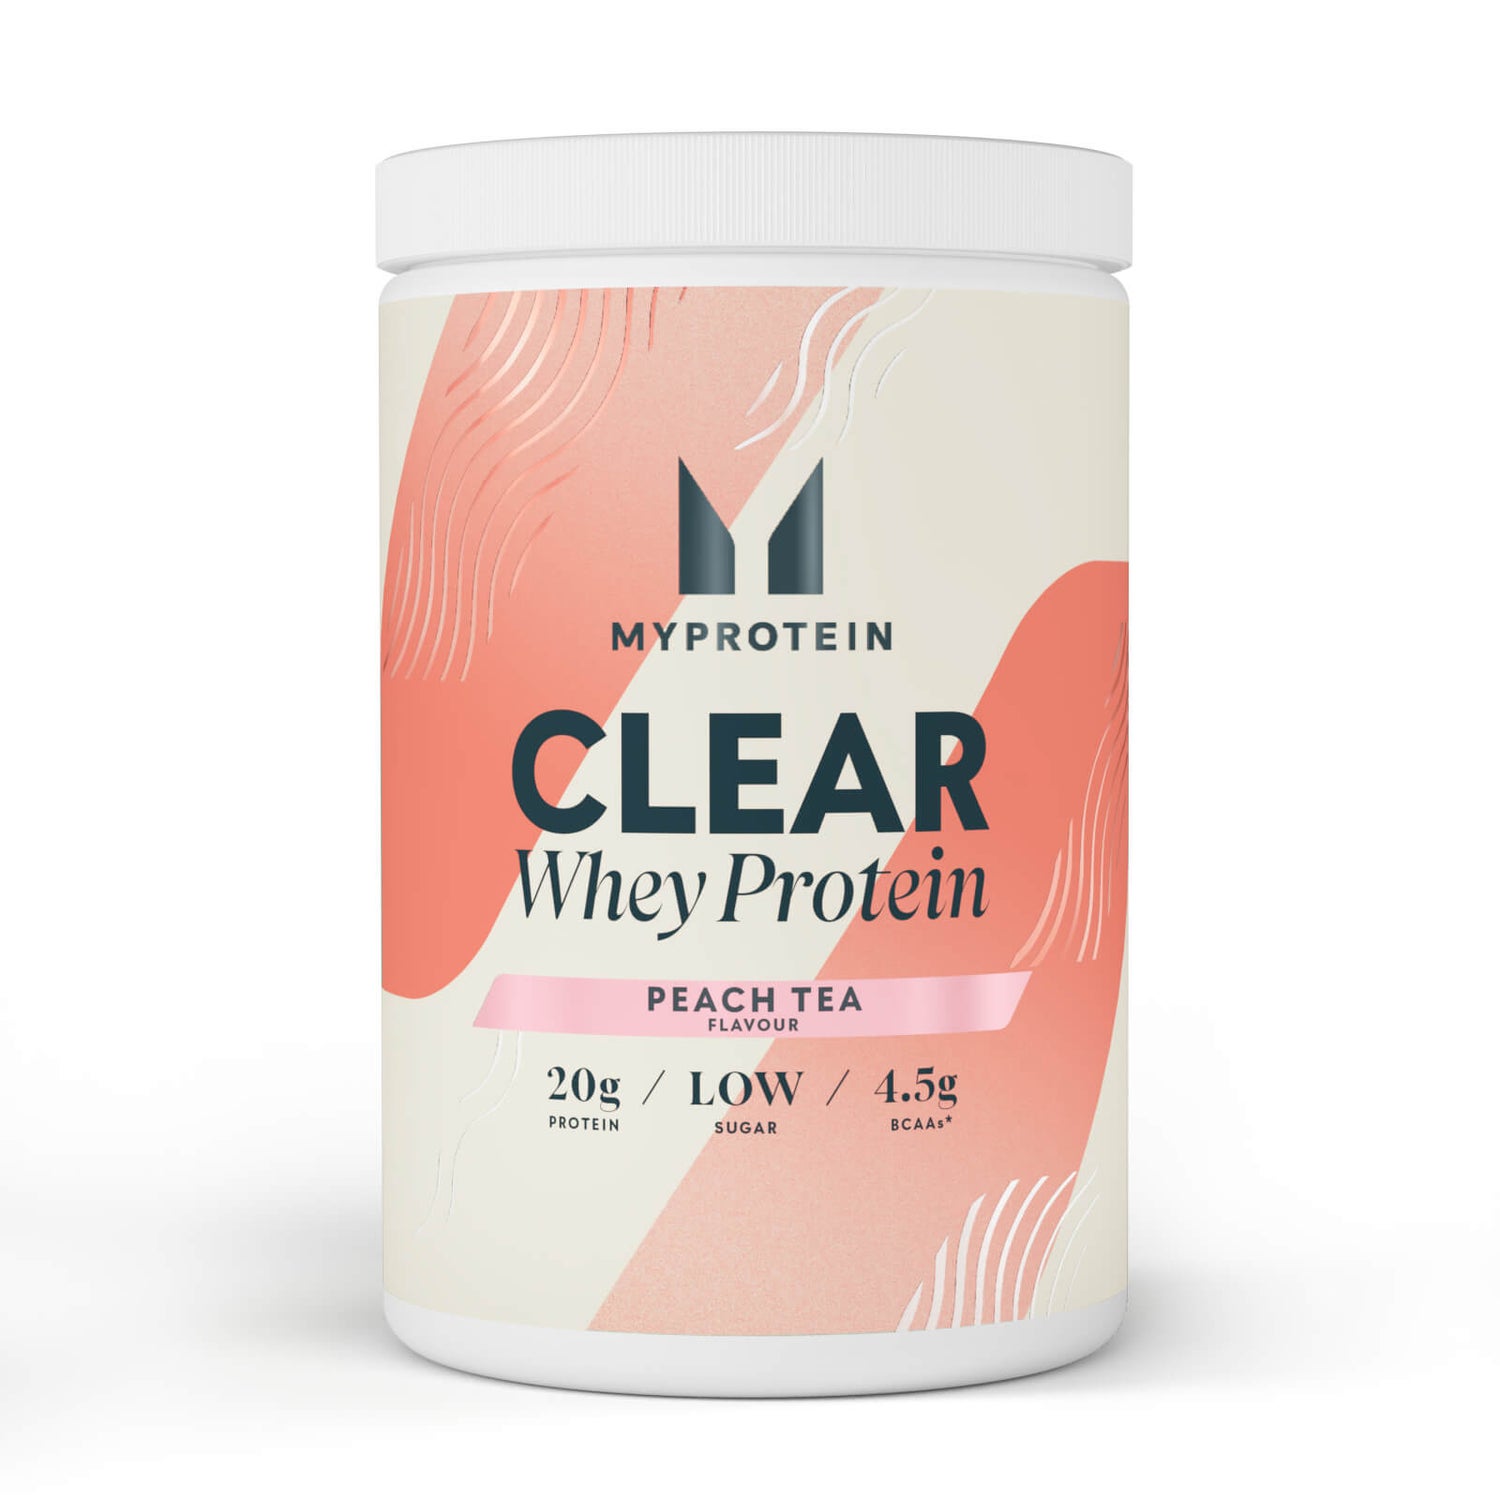 Clear Whey Protein Powder